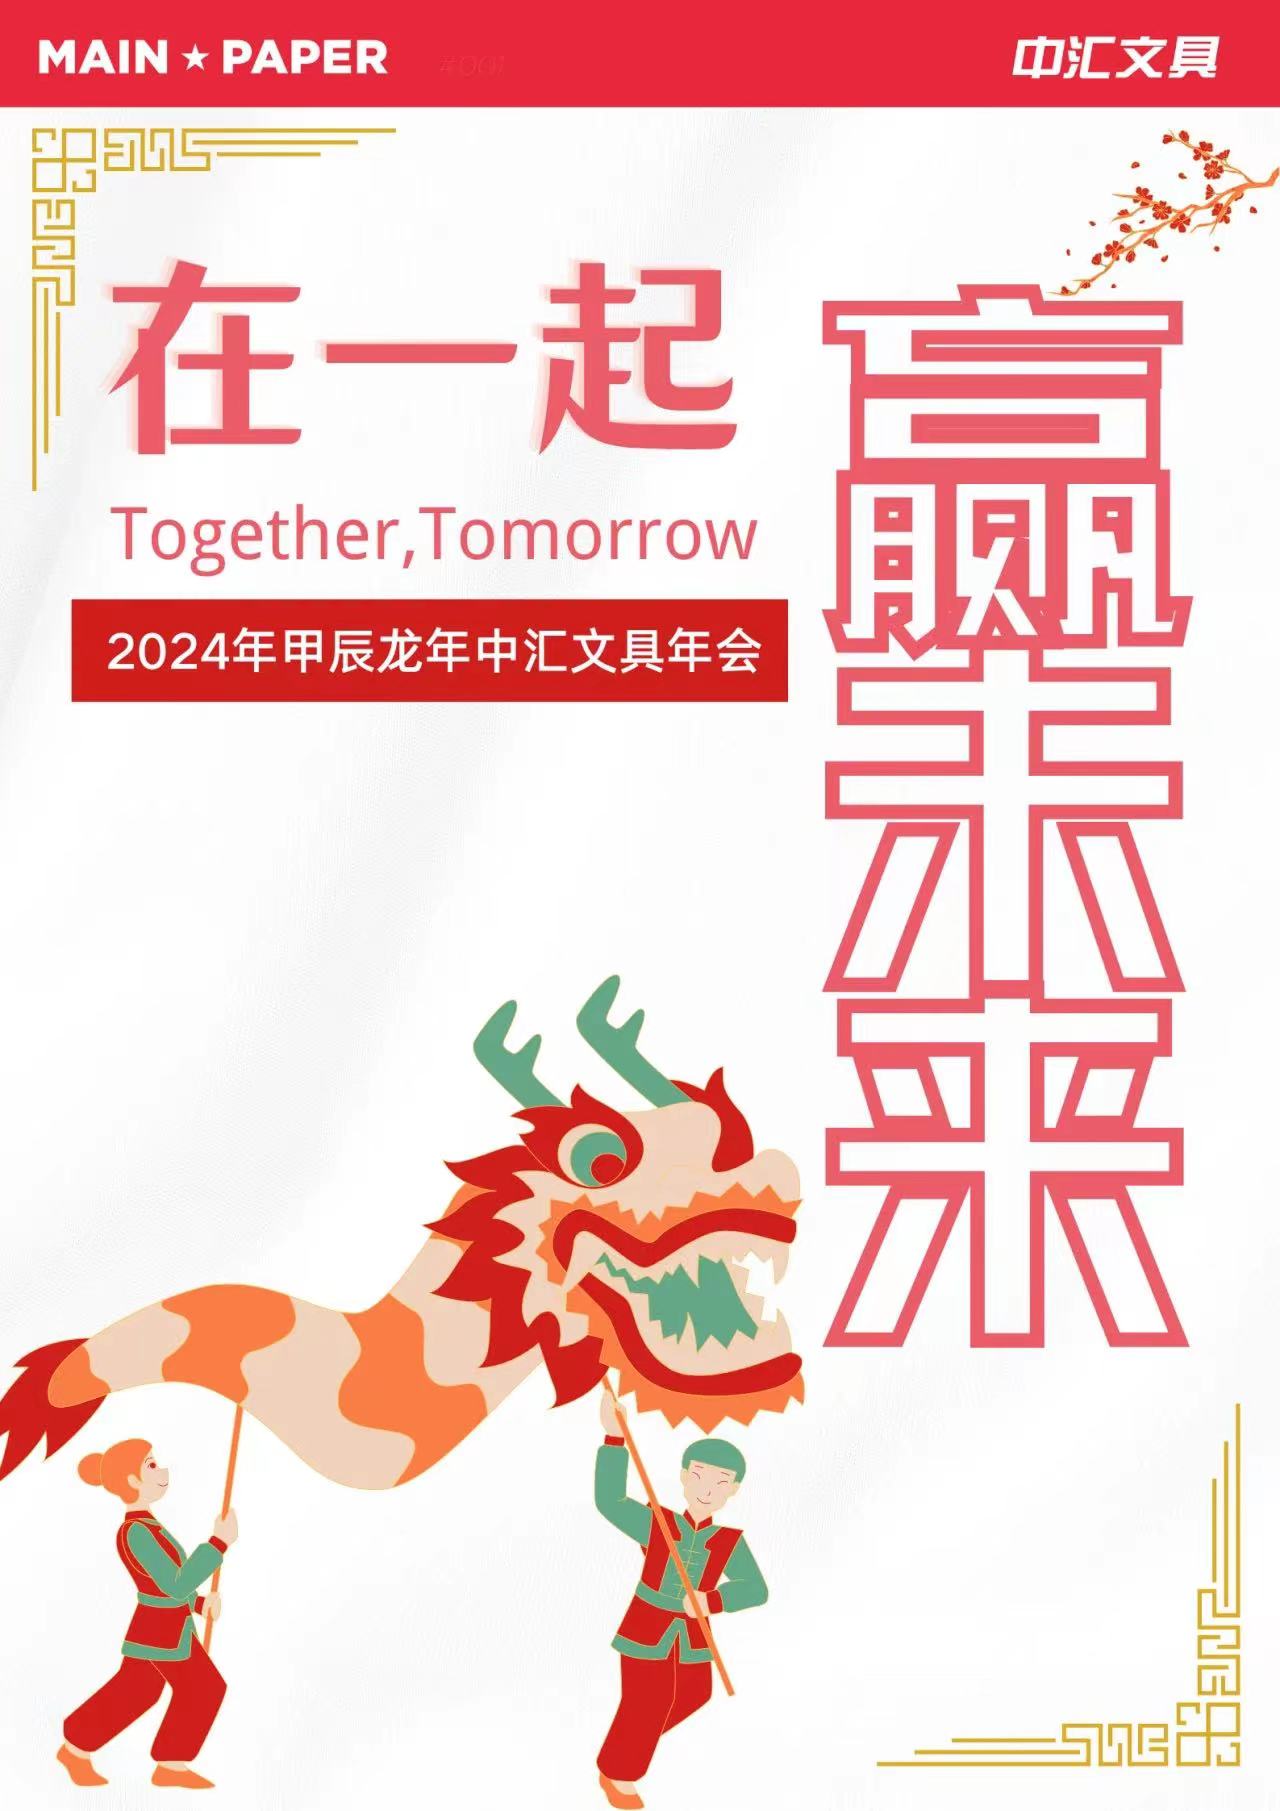 "Together, Tomorrow" Main Paper Dragon Urteko Konferentzia 2024